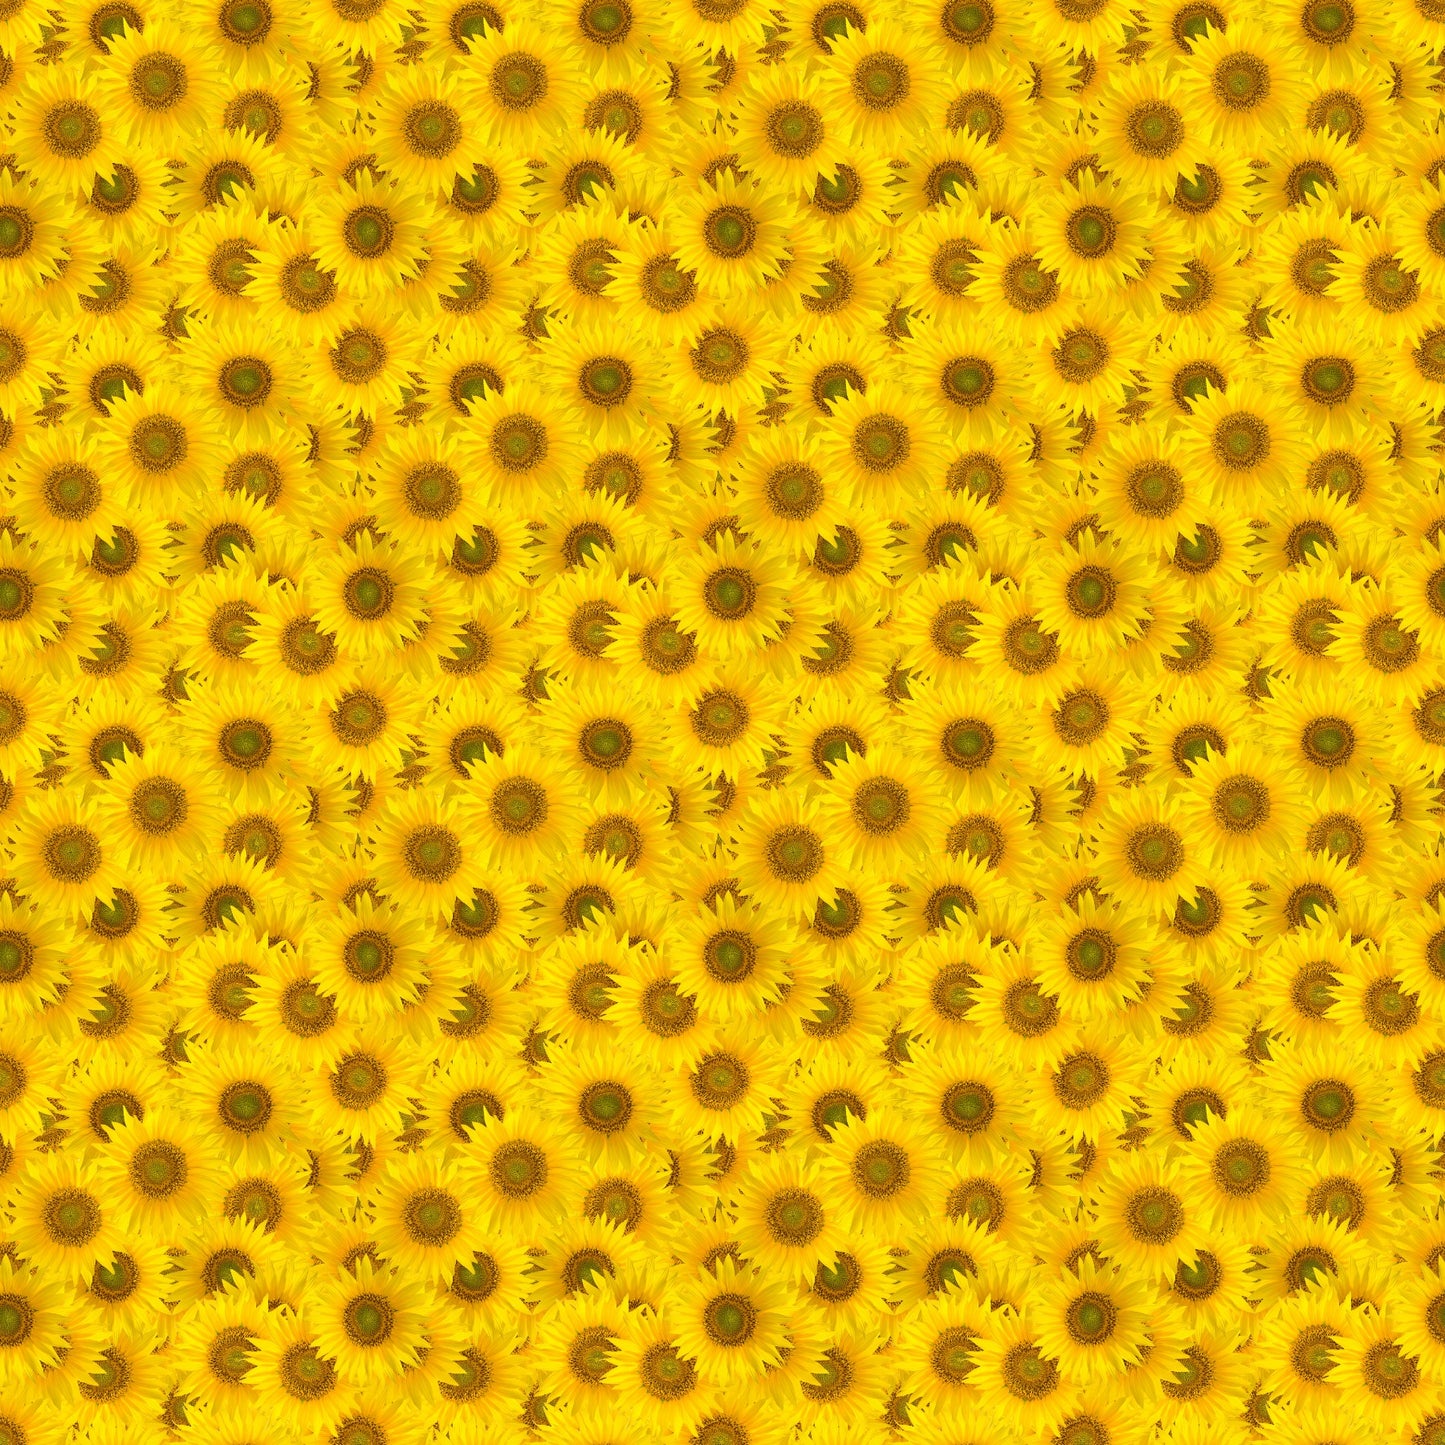 Sunflower Power - Adhesive Vinyl